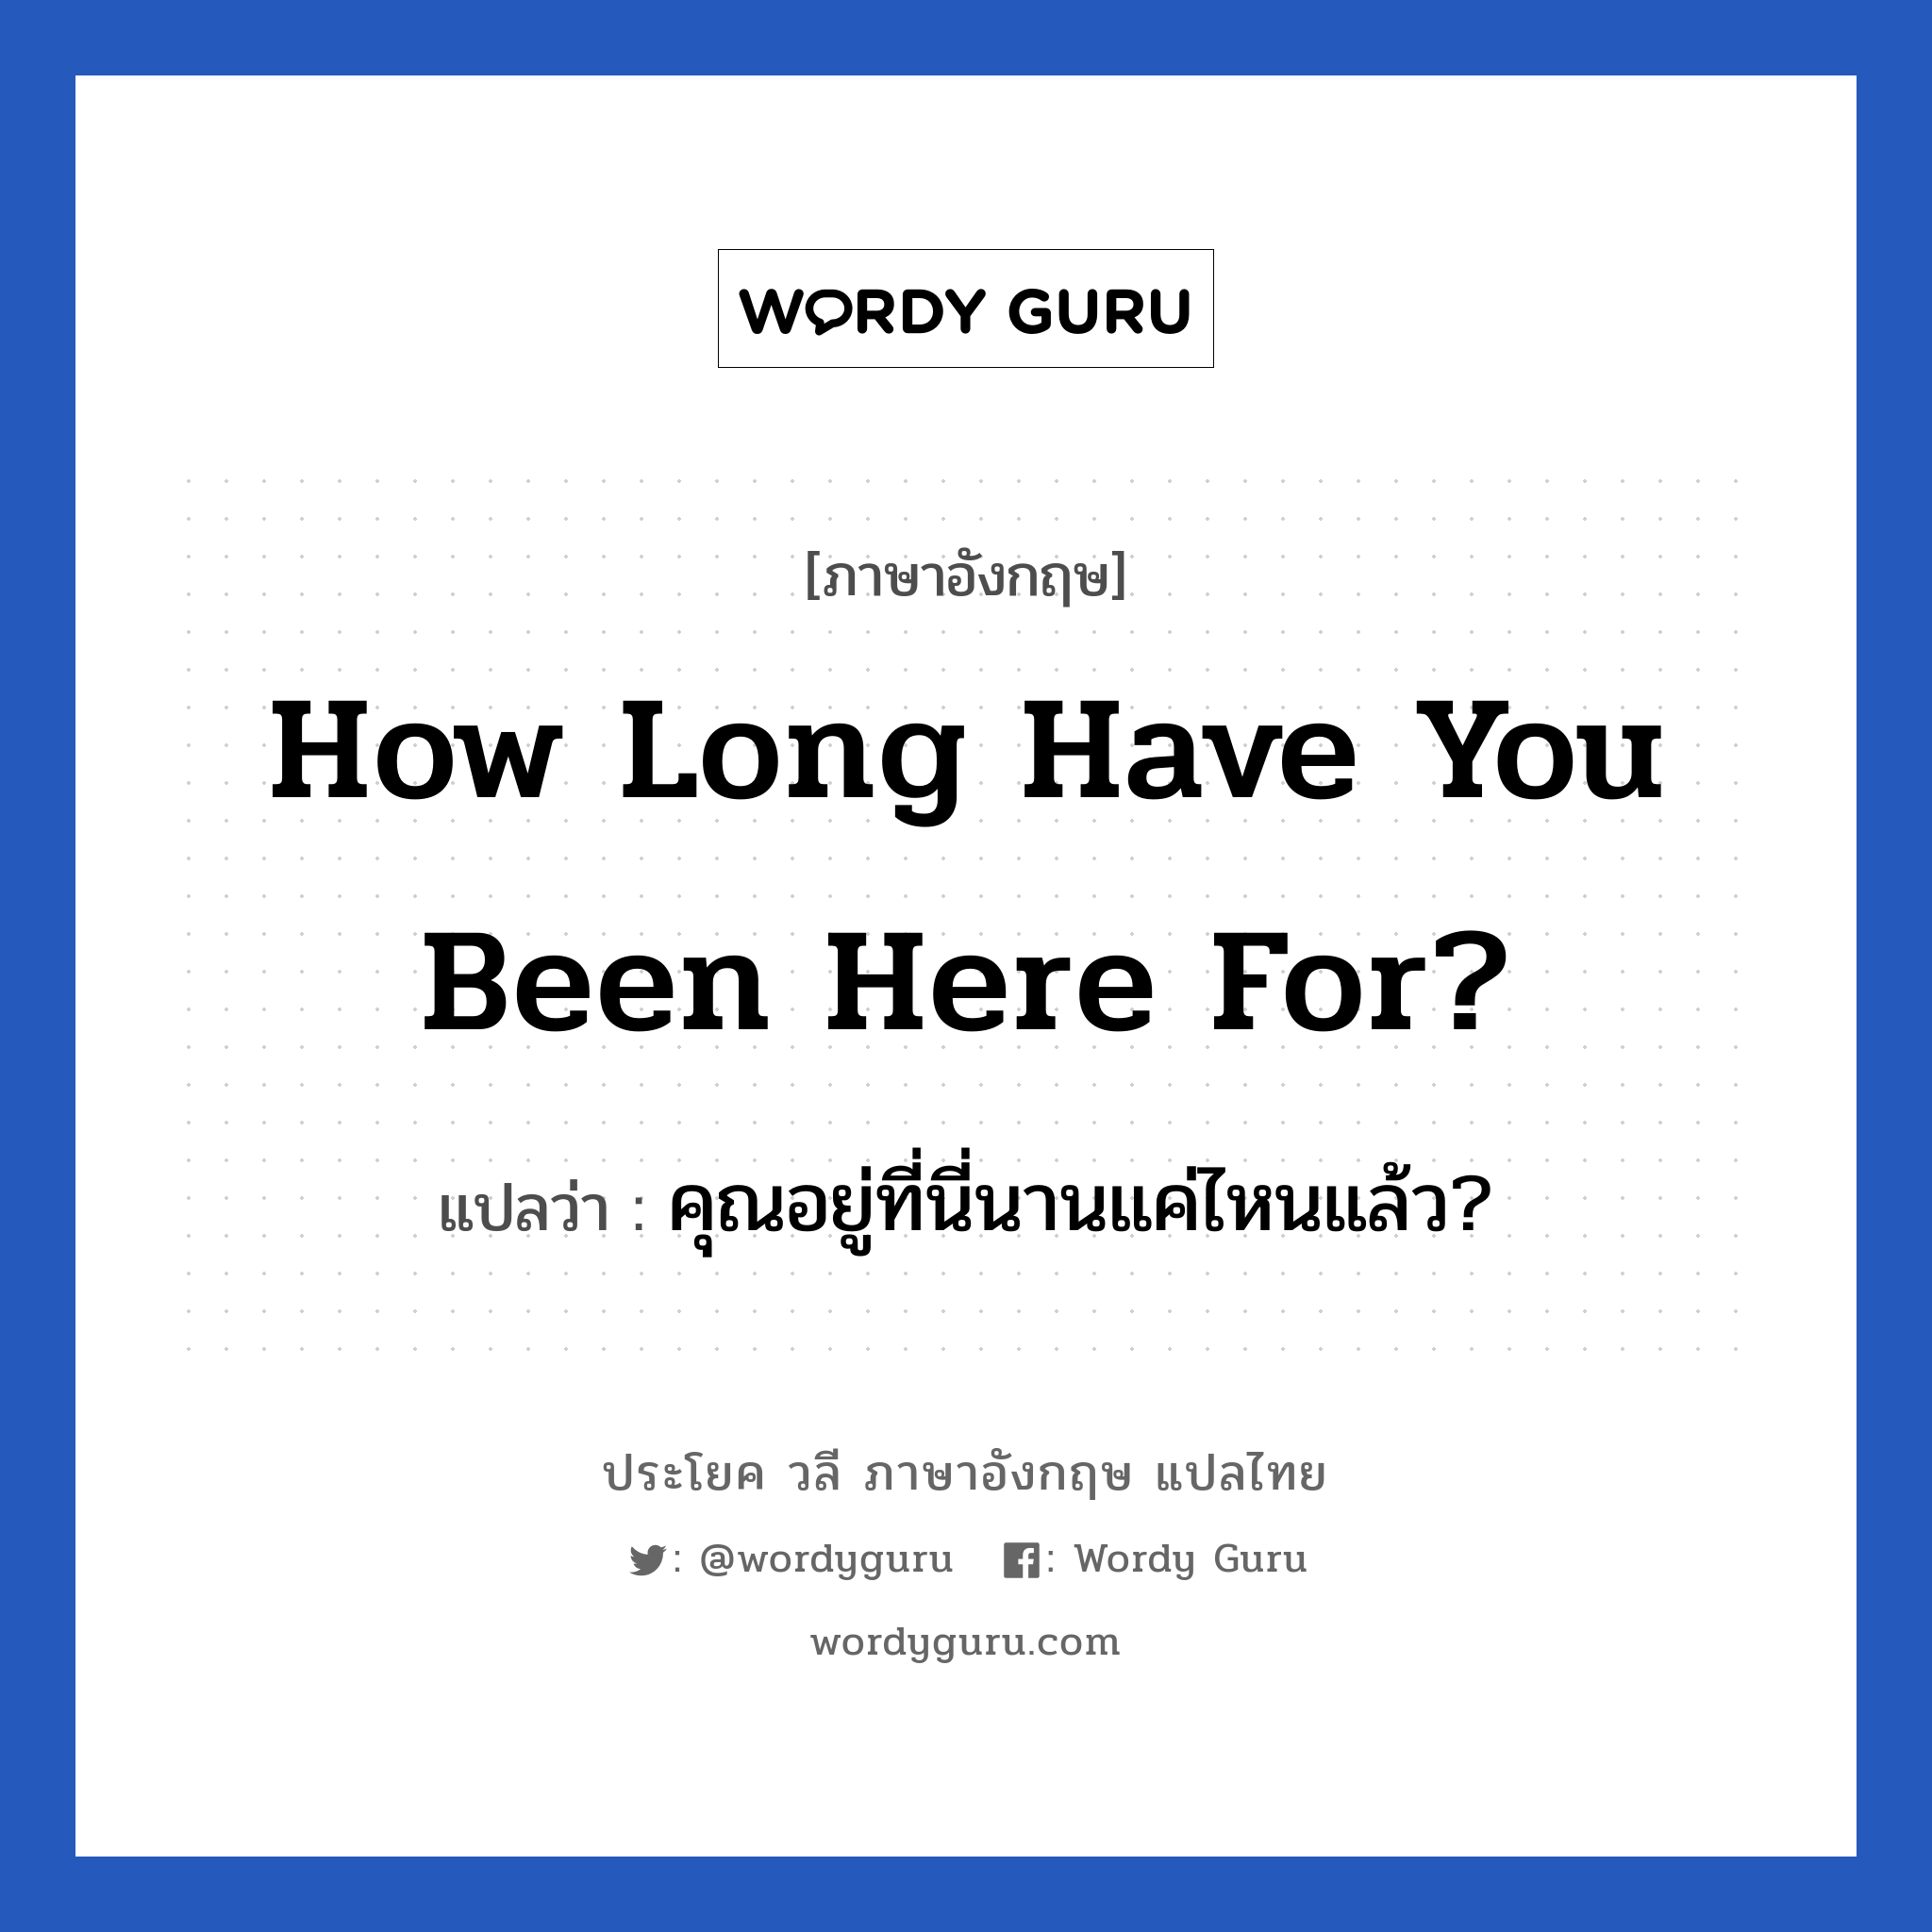 คุณอยู่ที่นี่นานแค่ไหนแล้ว? ภาษาอังกฤษ?, วลีภาษาอังกฤษ คุณอยู่ที่นี่นานแค่ไหนแล้ว? แปลว่า How long have you been here for?